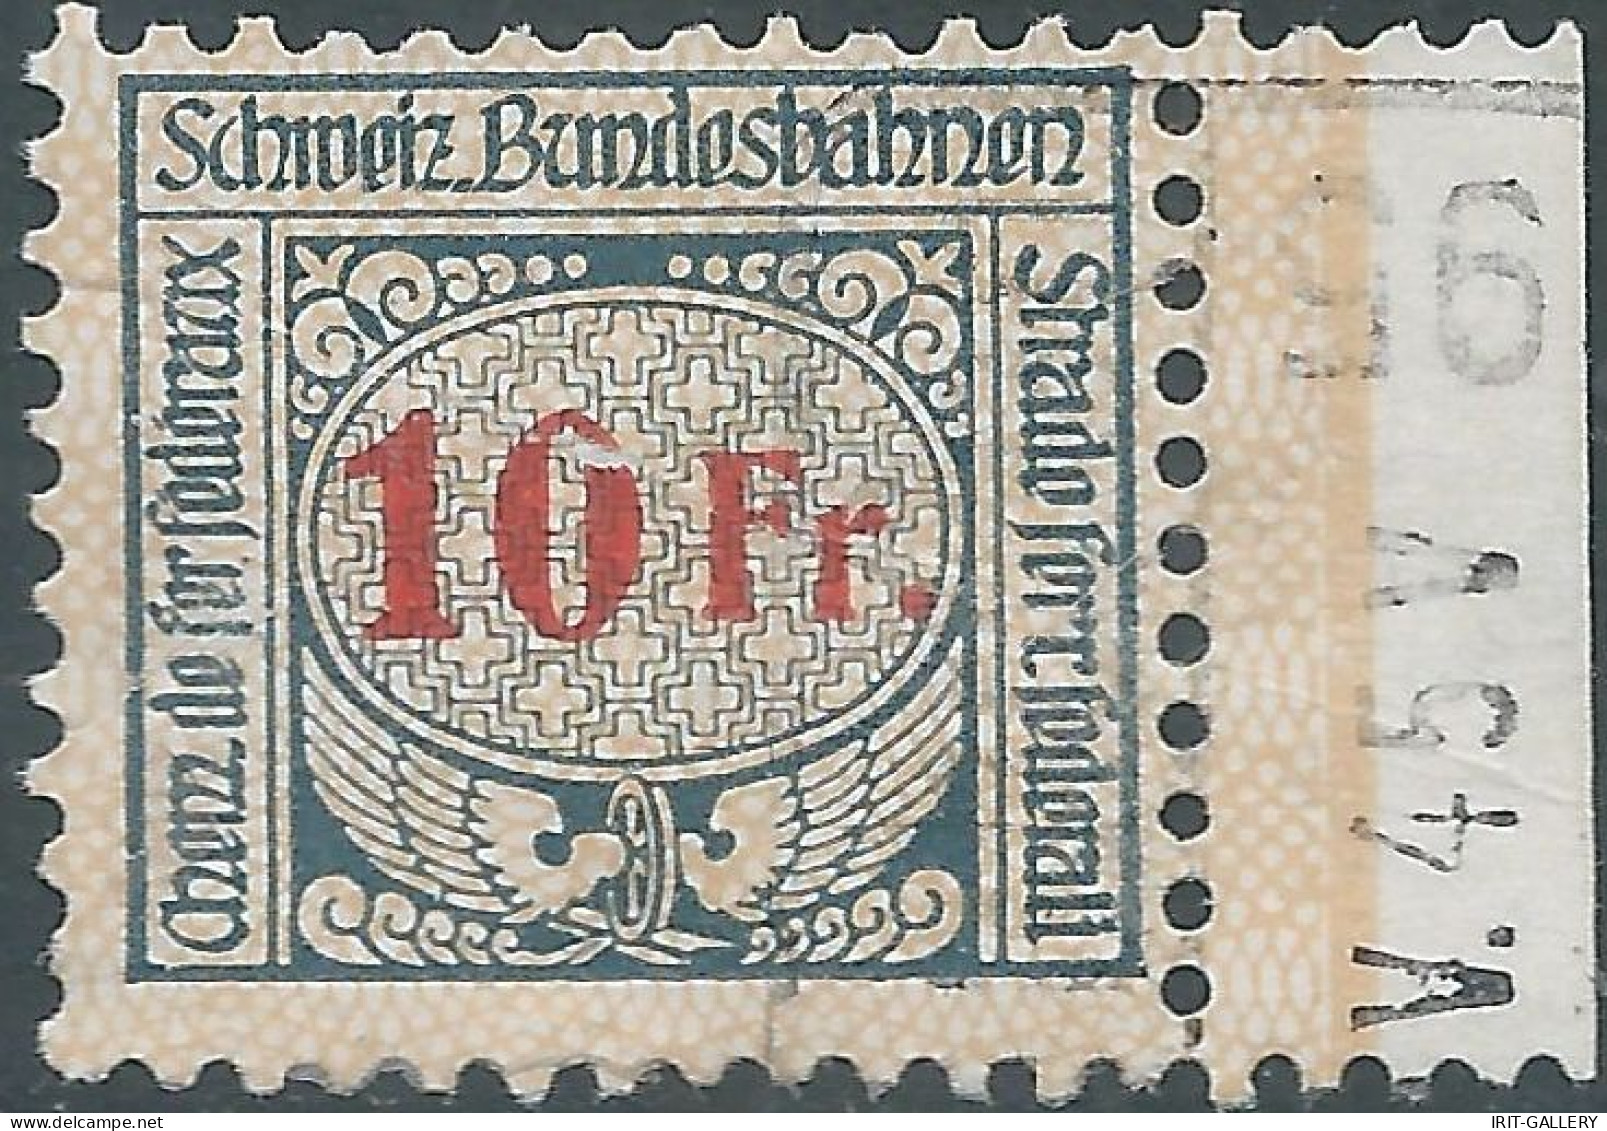 Svizzera-Switzerland-Suisse,1920/25 Revenue Stamp Tax Fiscal 10fr,SCHWEIZ.BUNDESBAHNEN-SWISS.FEDERAL RAILWAYS,Defective! - Bahnwesen